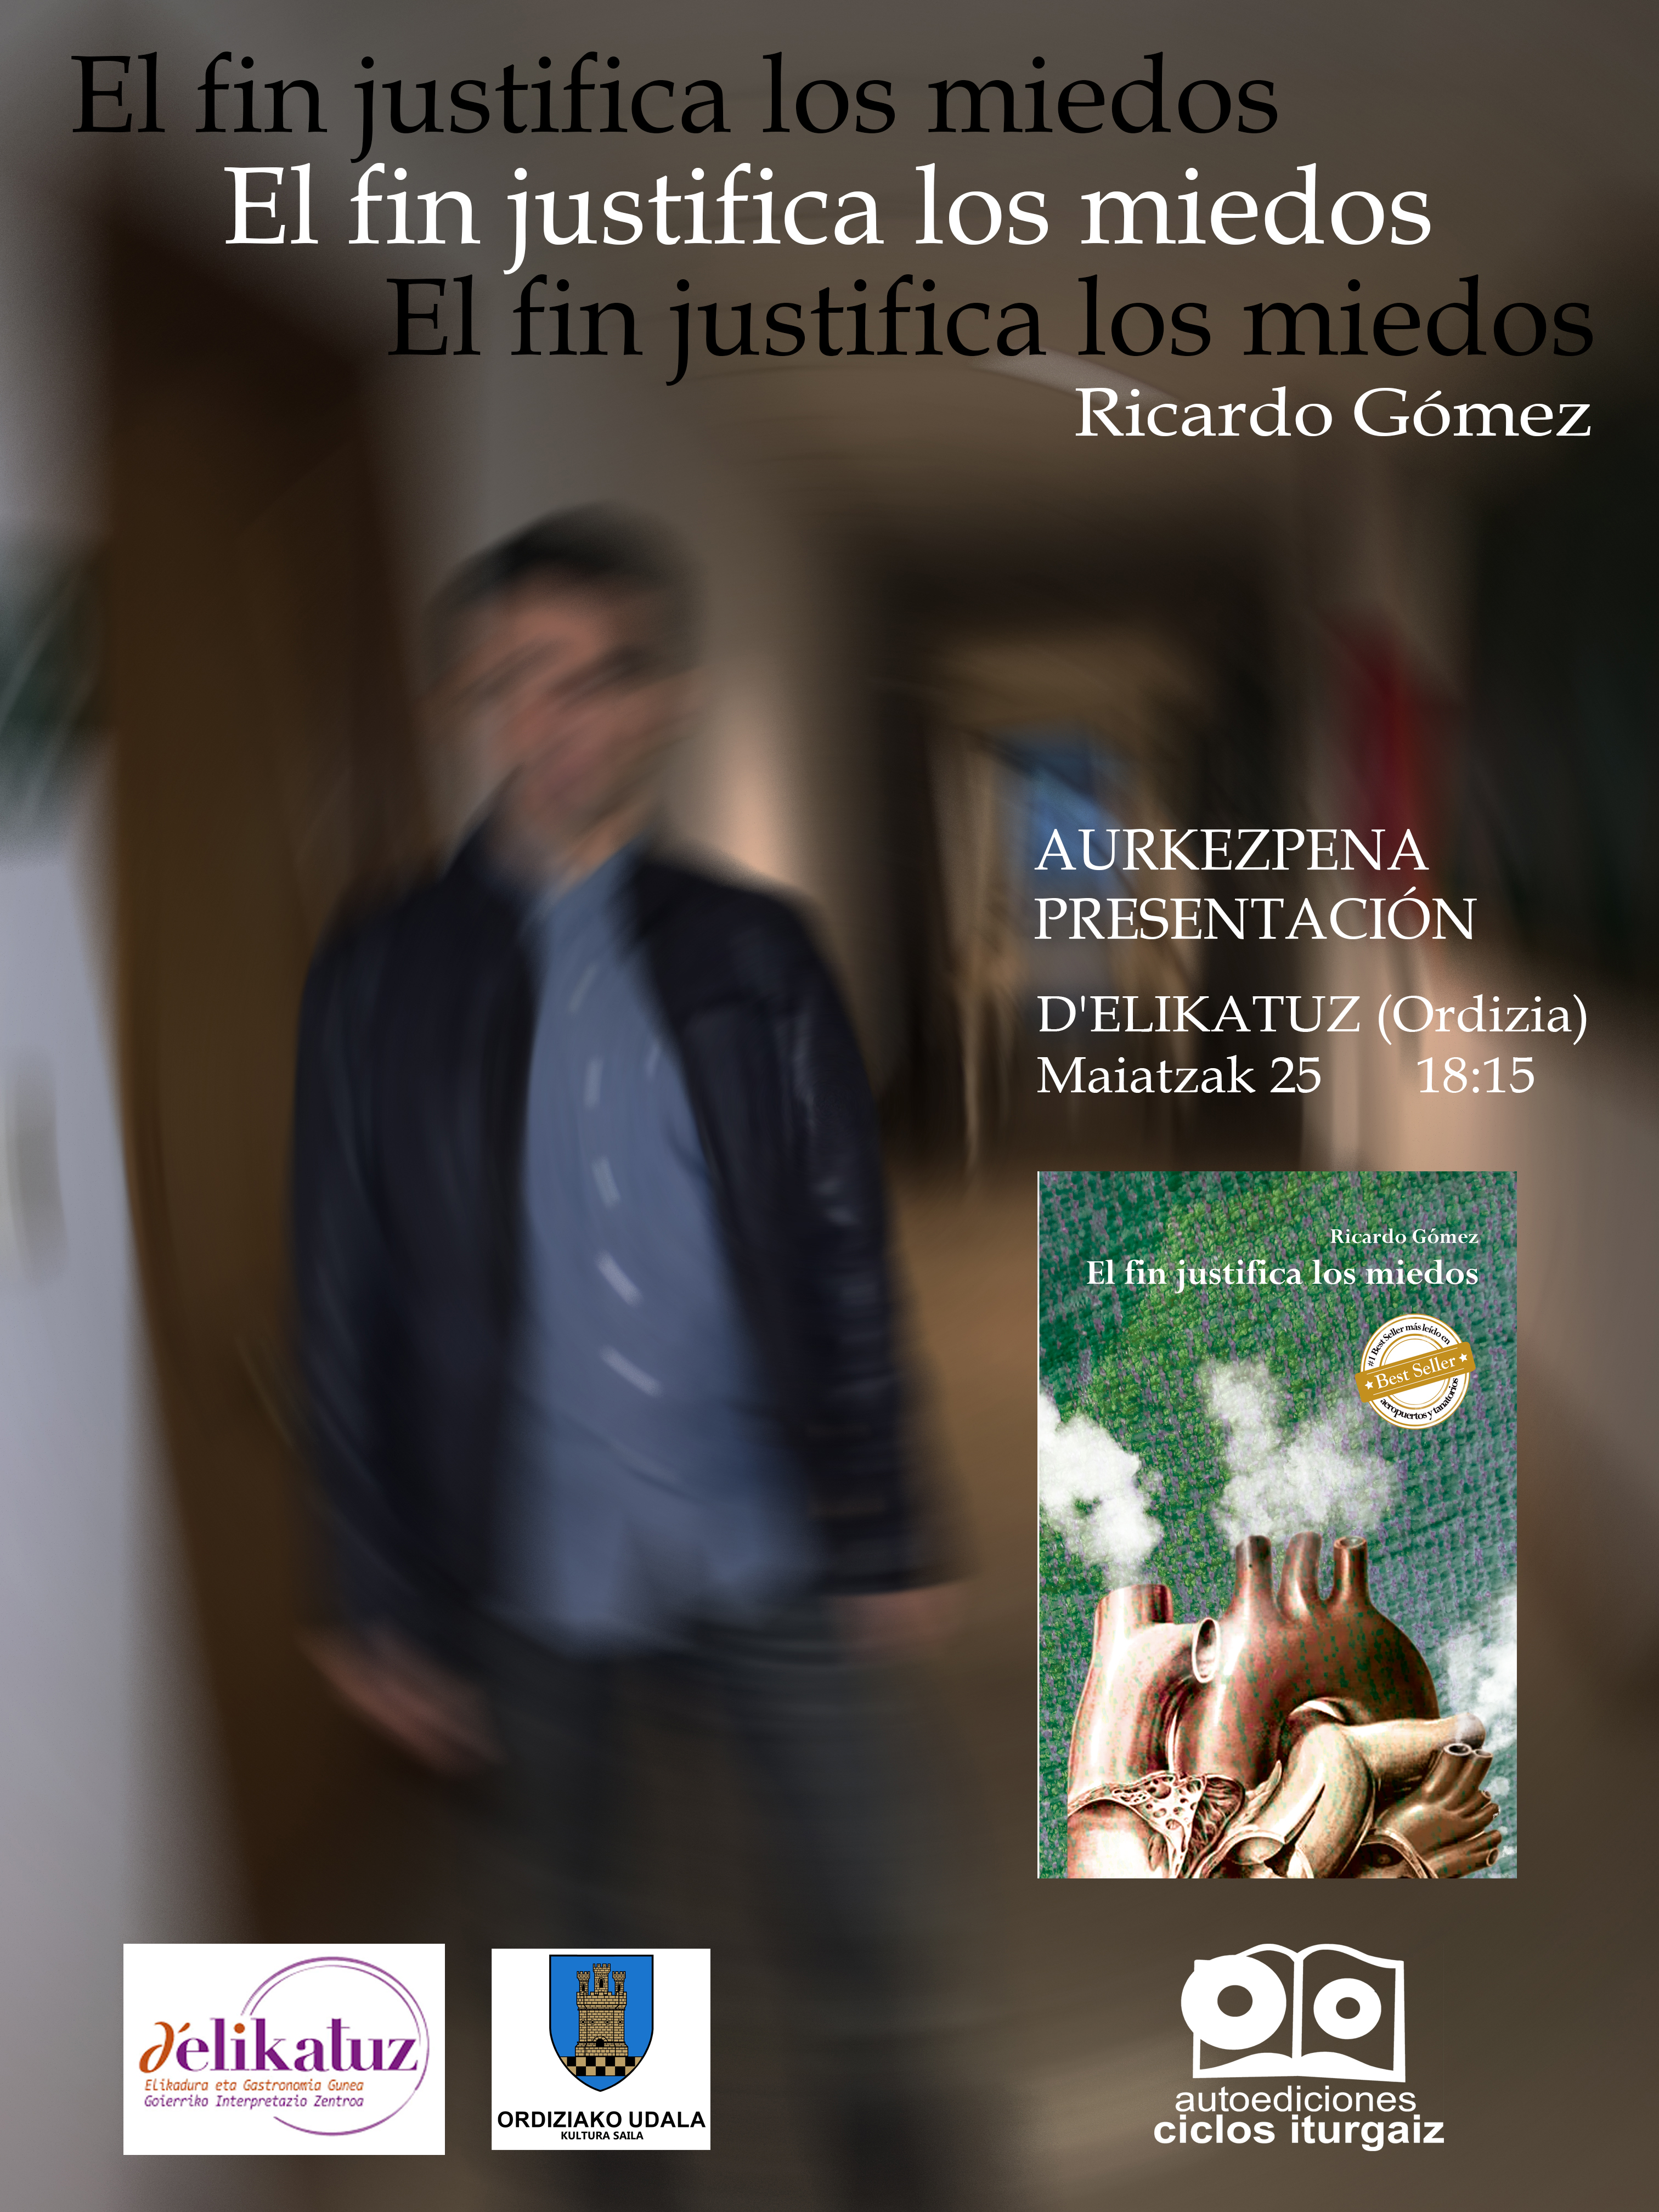 PRESENTACIÓN DEL LIBRO “EL FIN JUSTIFICA LOS MIEDOS” DE RICARDO GOMEZ “RITXAR”